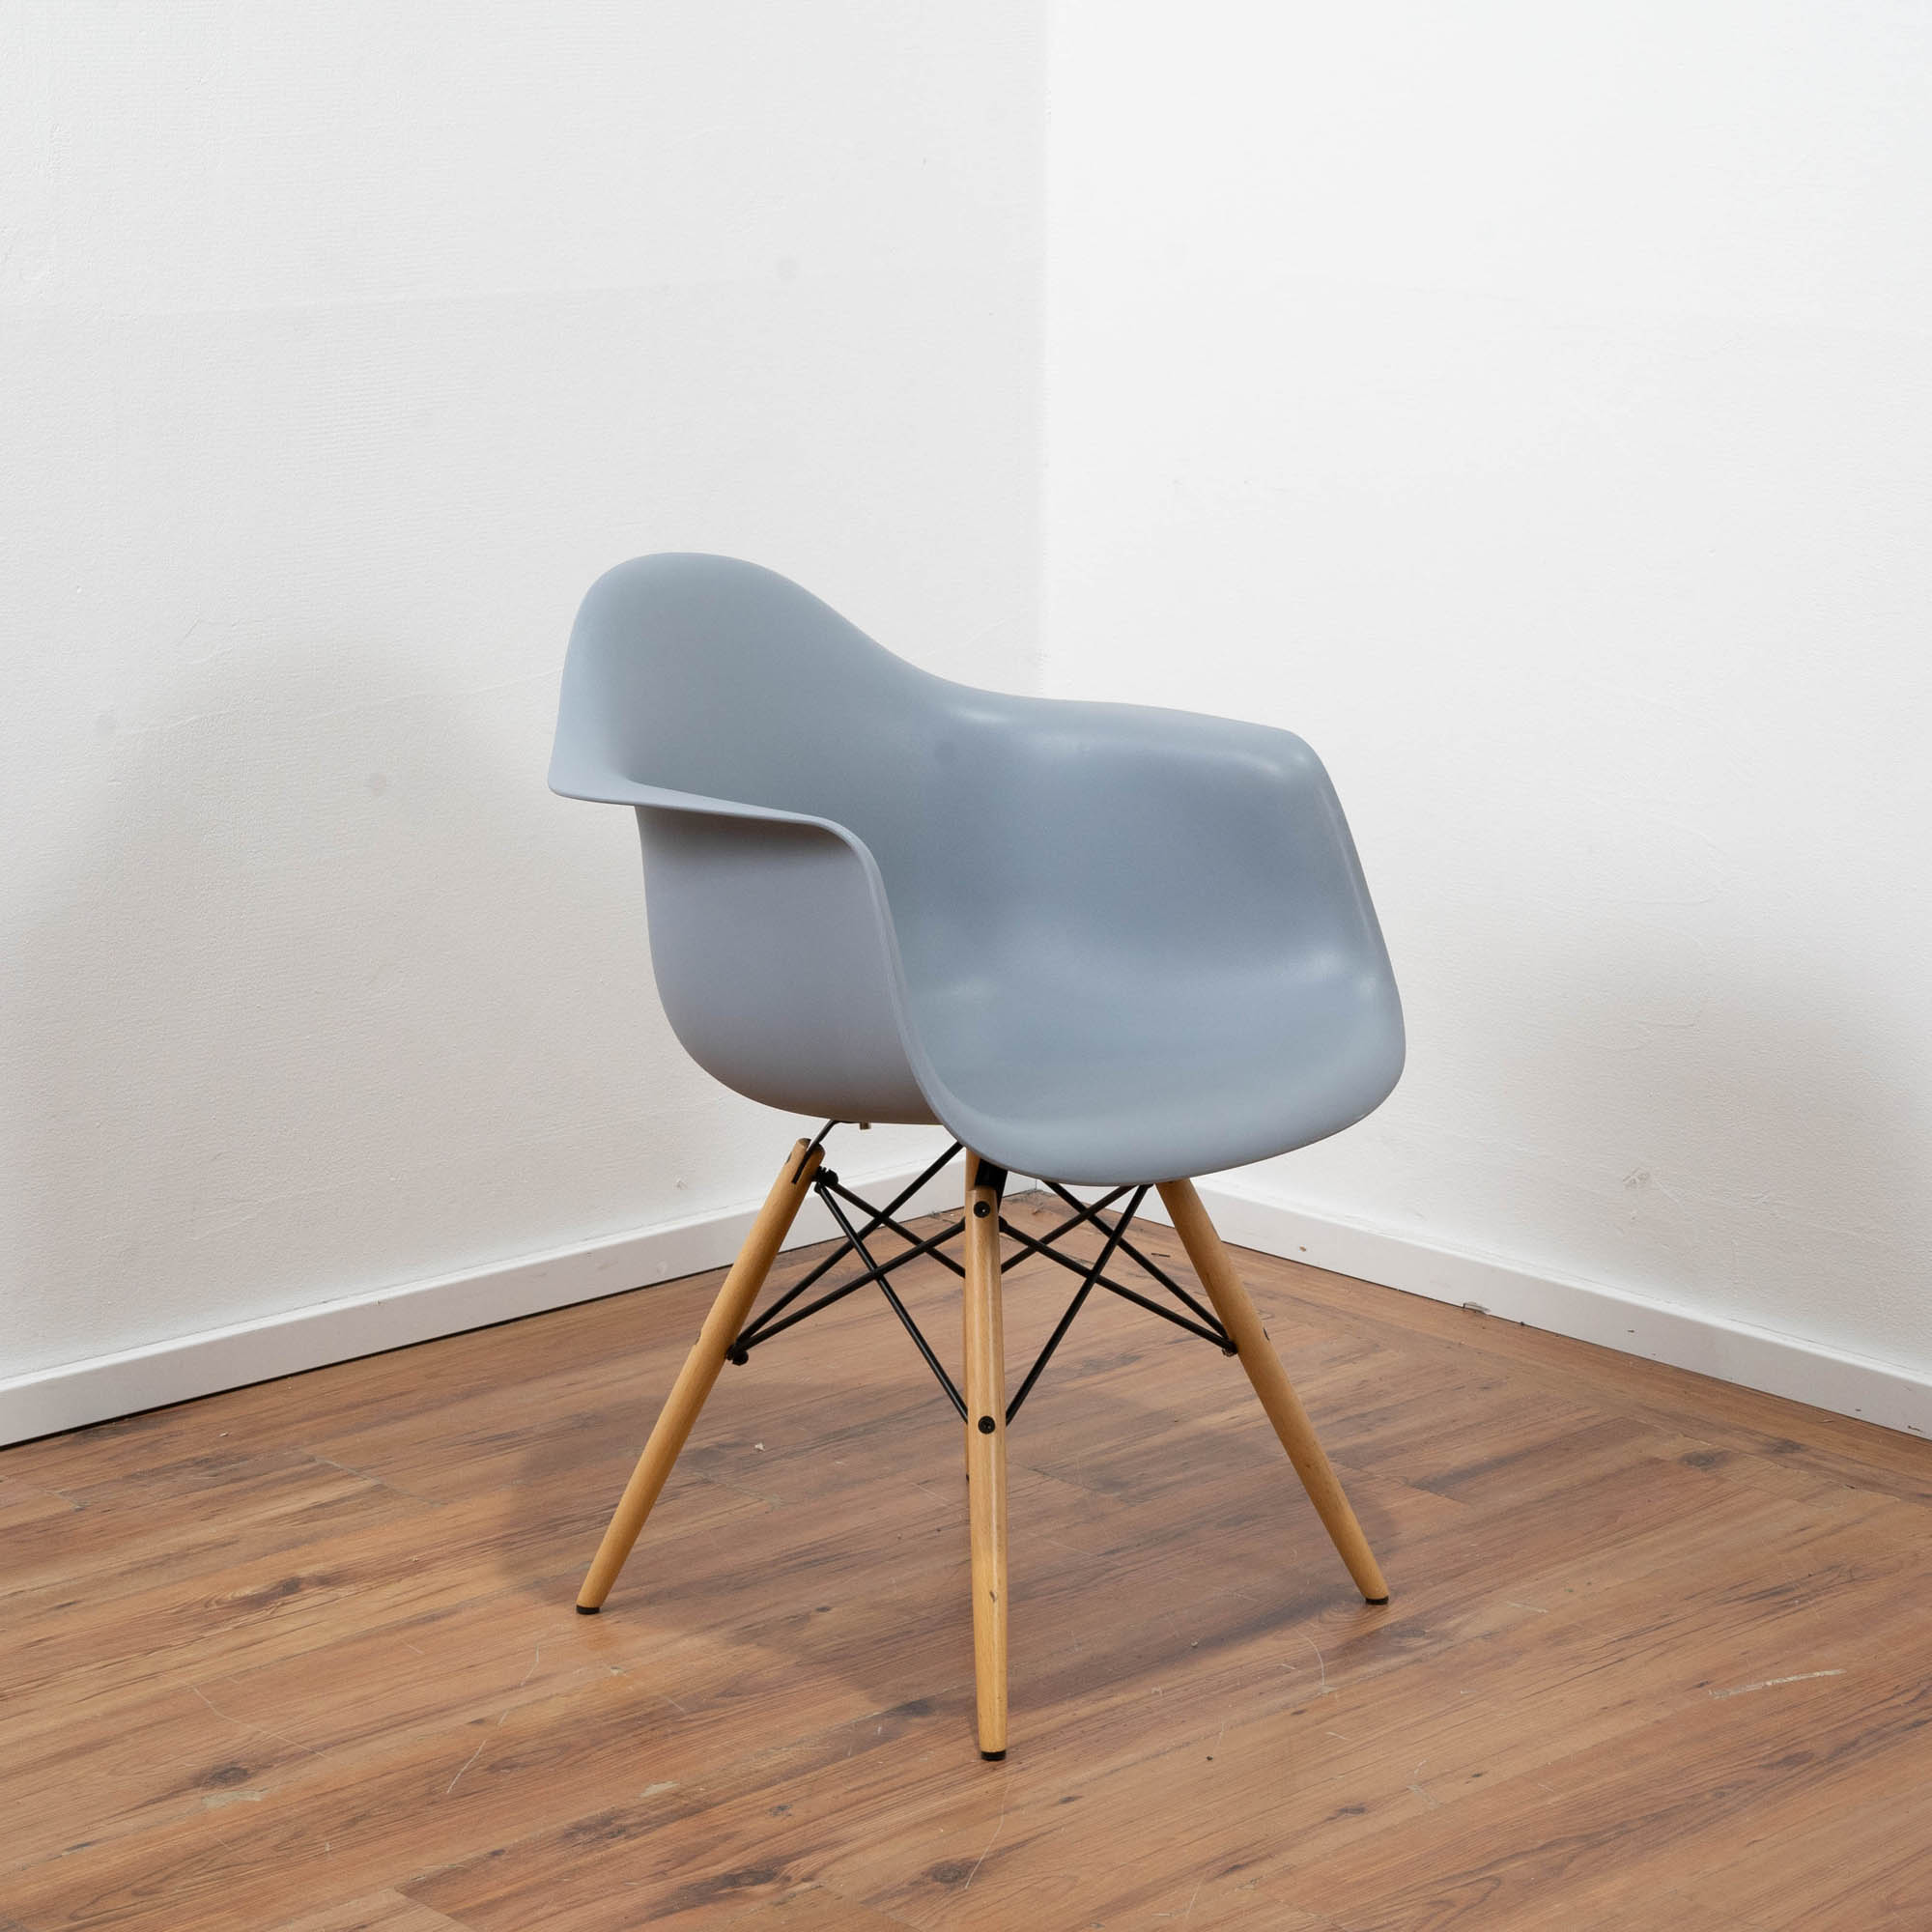 Schalensitz Stuhl Kunststoff hellblau - 4-Fußgestell Buche